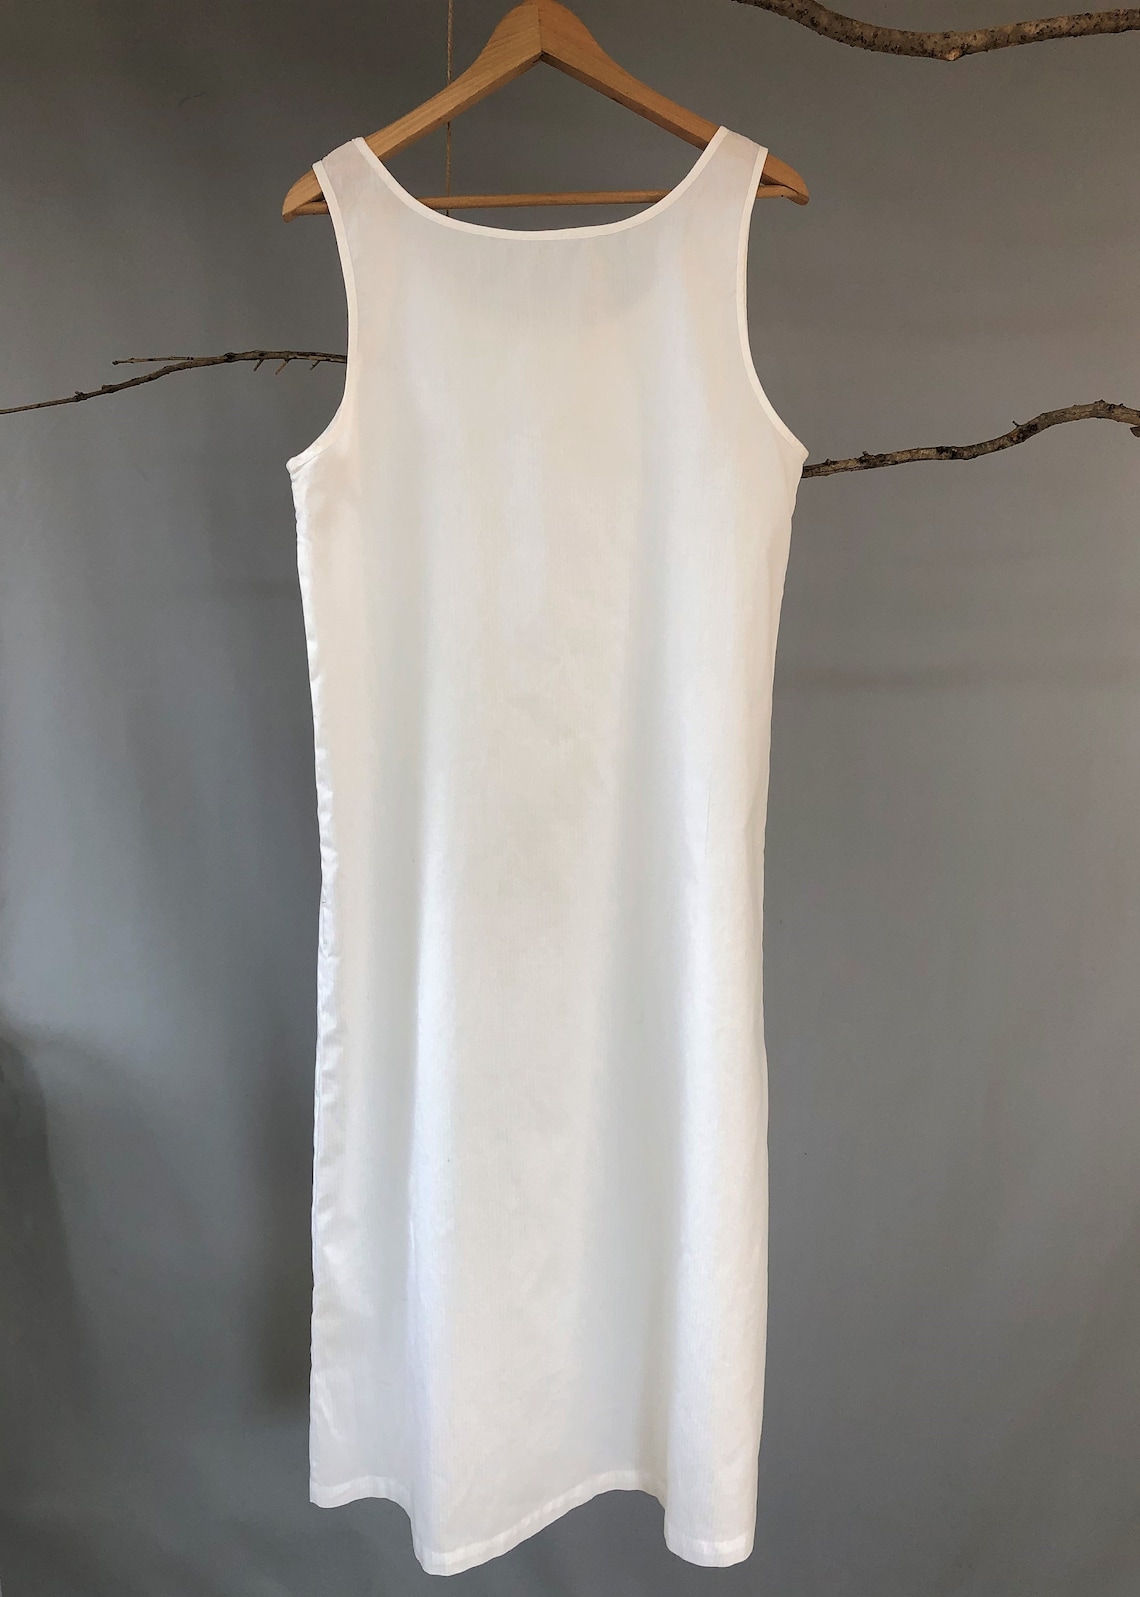 Full Slip White Underdress Underdress Thigh Length - Etsy Australia